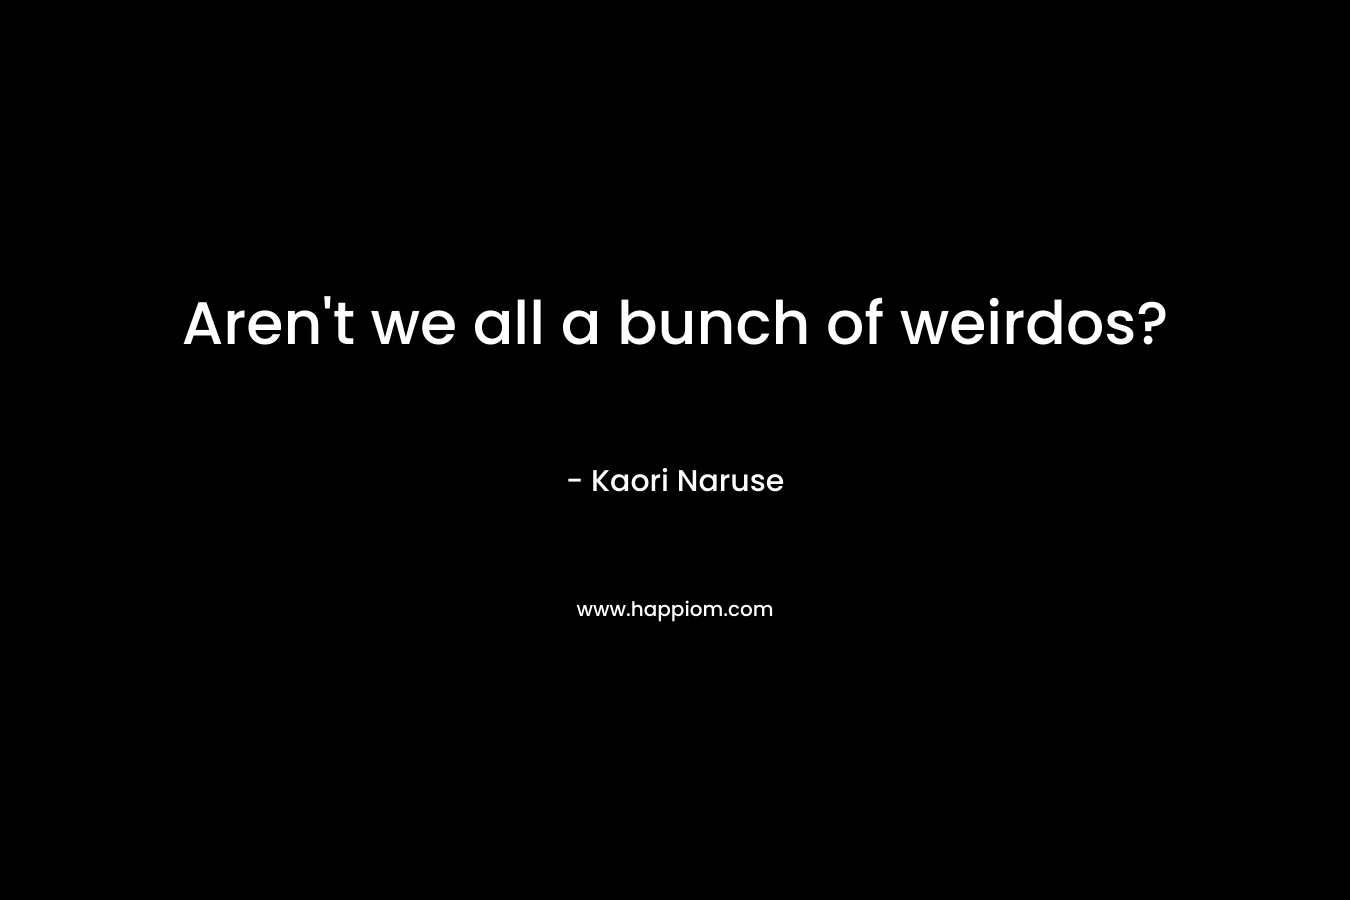 Aren't we all a bunch of weirdos?